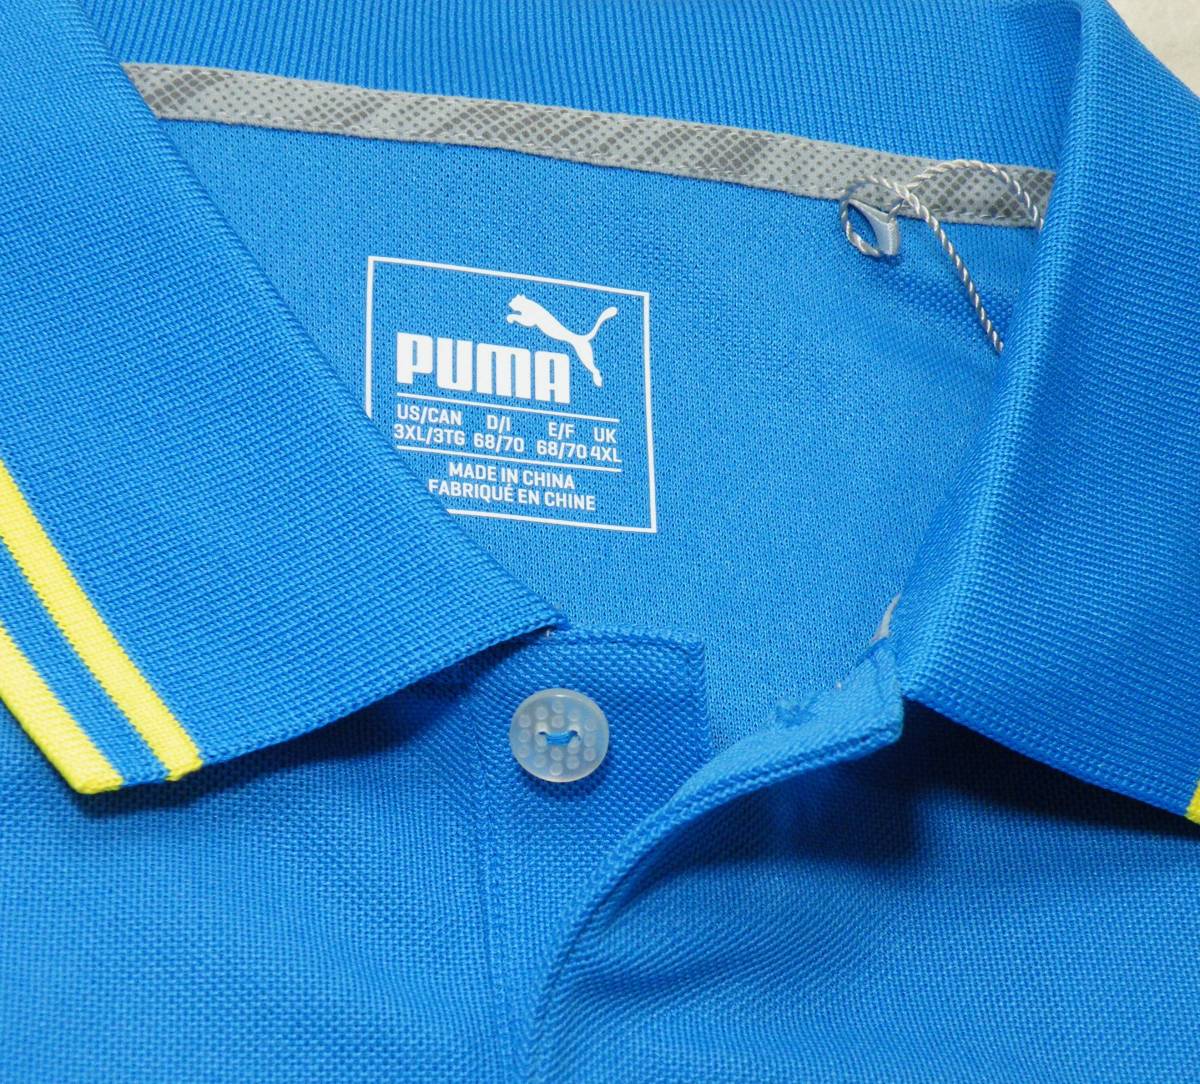 [2 шт. комплект ] Puma Golf ① рубашка-поло / голубой ② длинный рукав pop over / зеленый *USXL(3L-4L) большой размер. мужской Golf одежда * все товар бесплатная доставка 